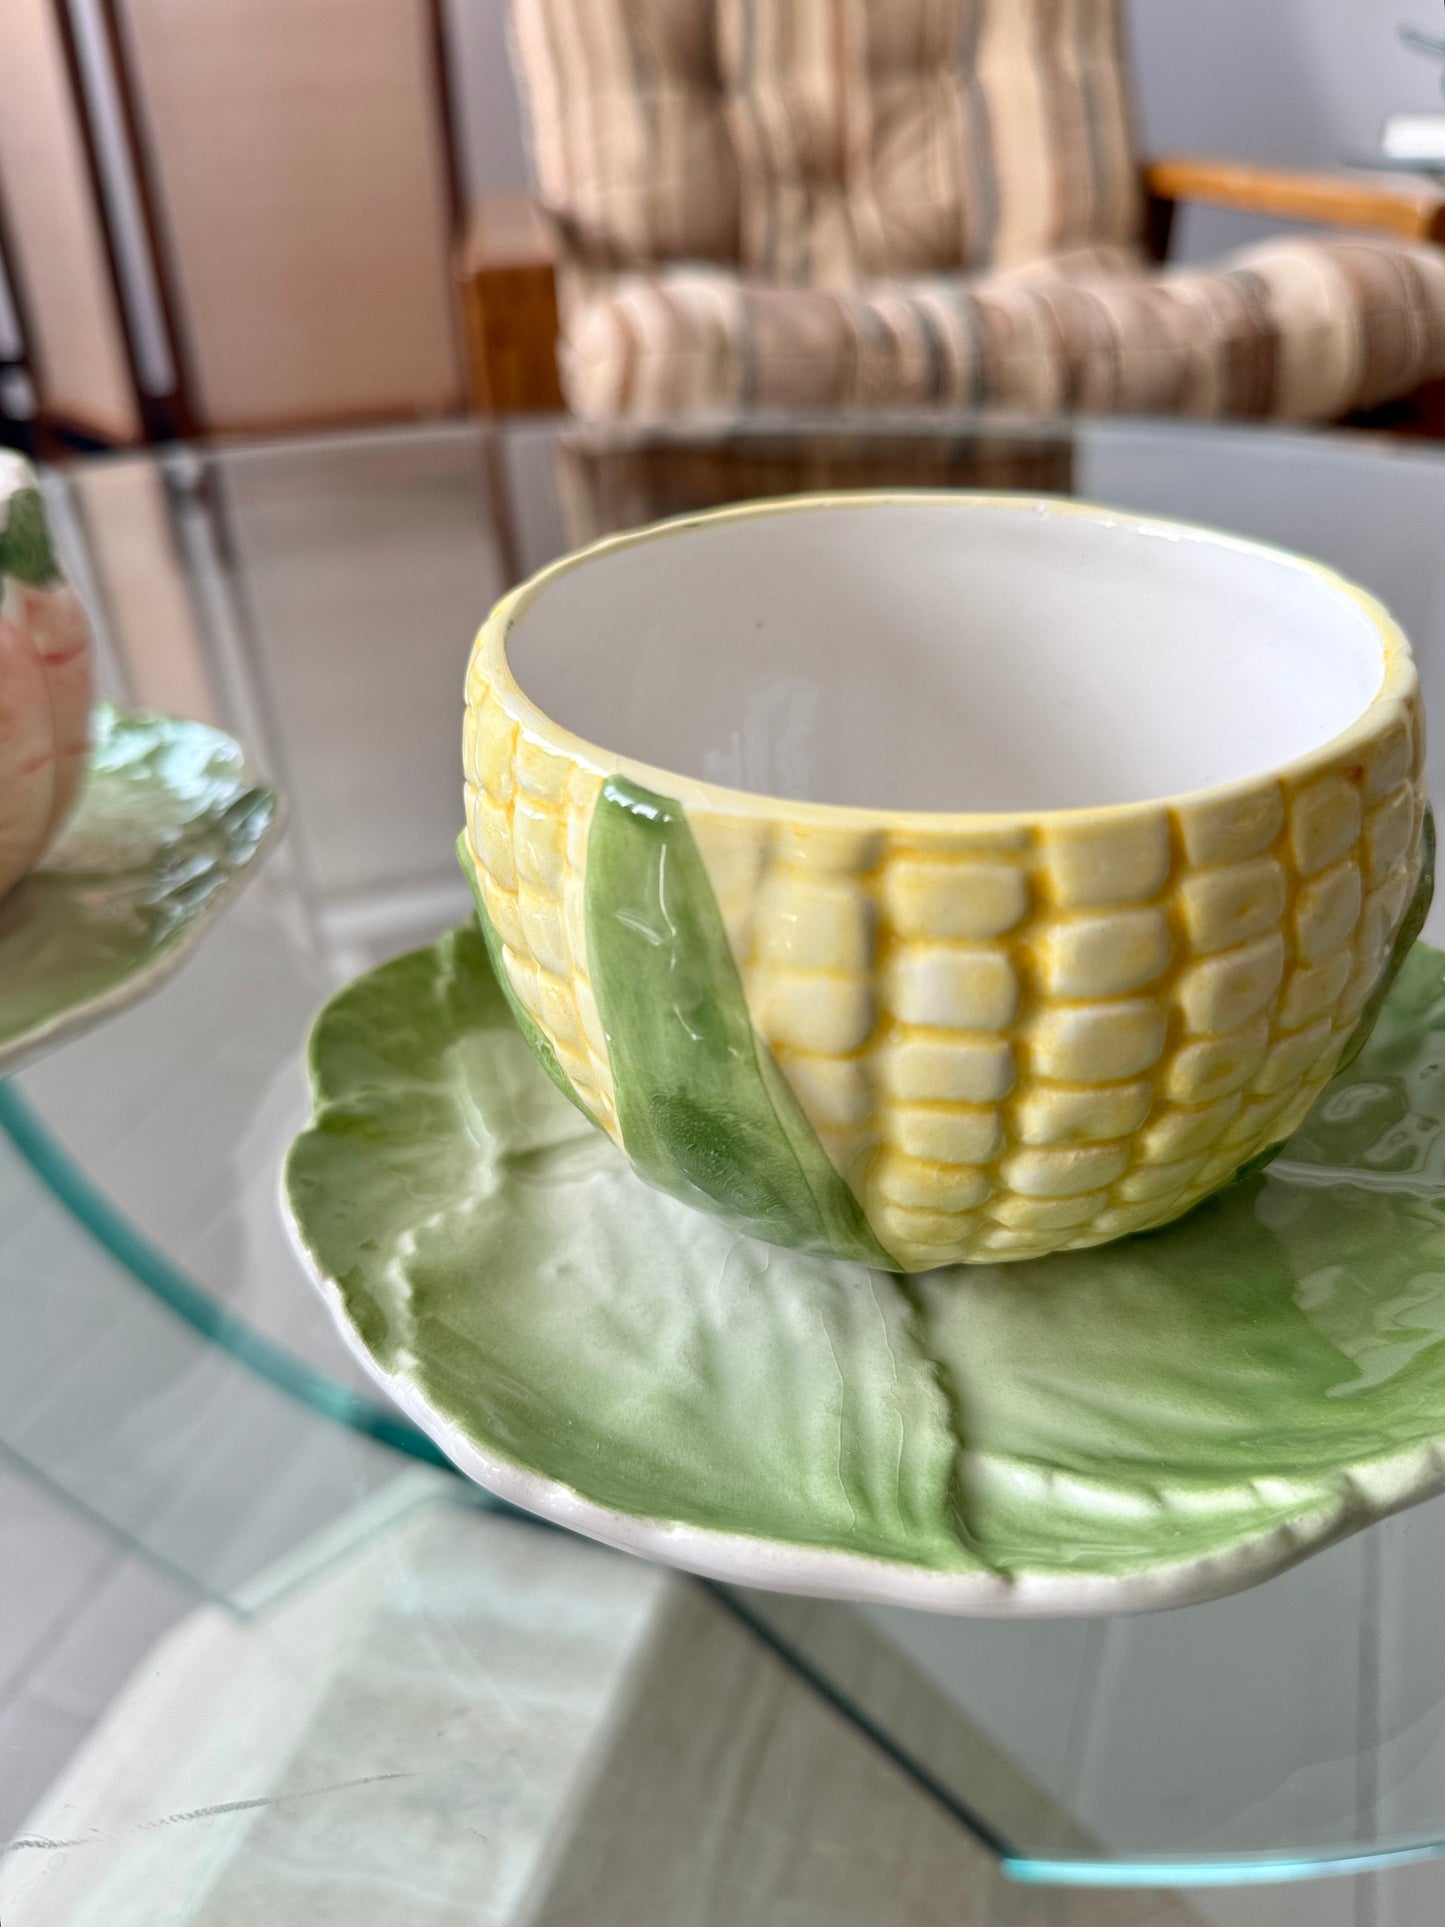 Vintage Ceramic Vegetable Embossed Bowl and Saucer Set